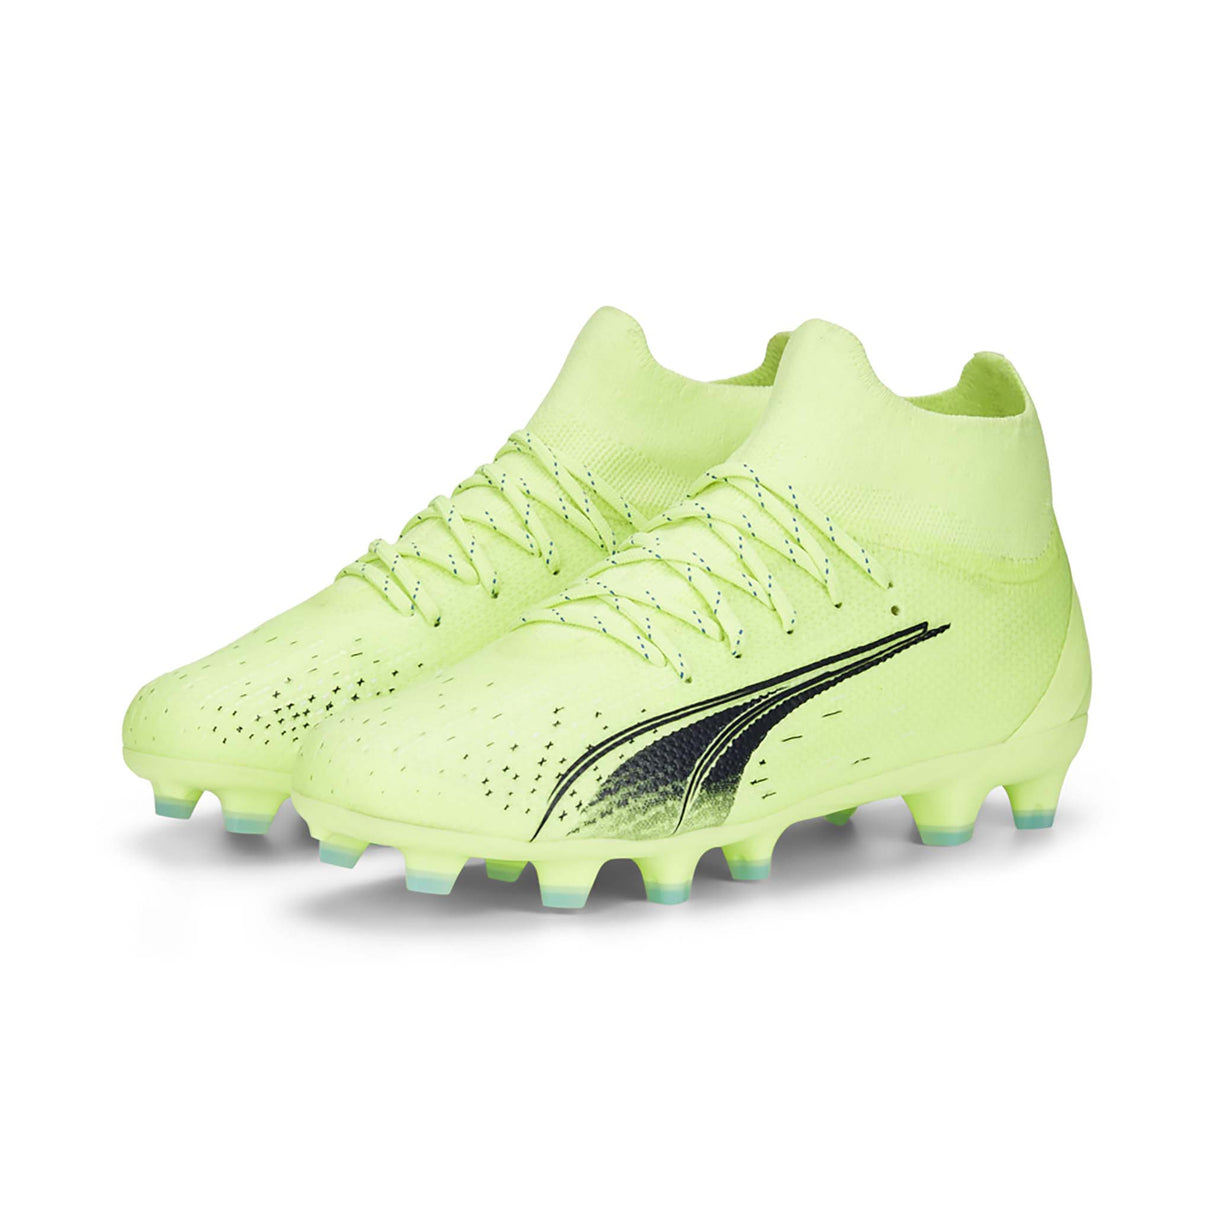 Puma Ultra Pro FG/AG souliers de soccer enfant fizzy light parisian night paire